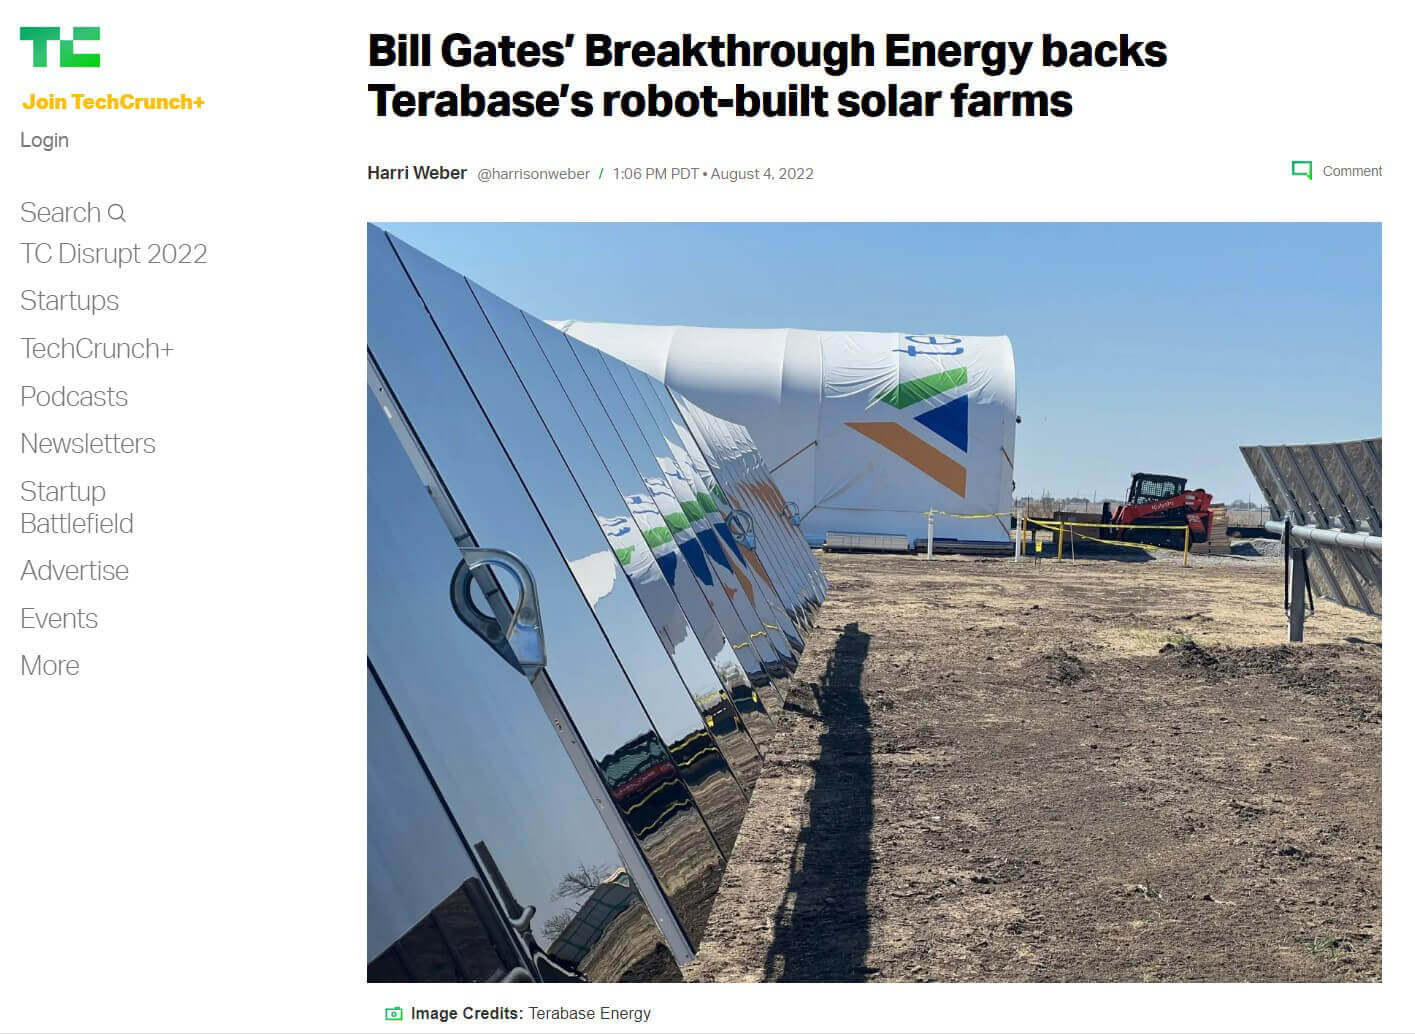 Bill Gates’ Breakthrough Energy backs Terabase’s robot-built solar farms